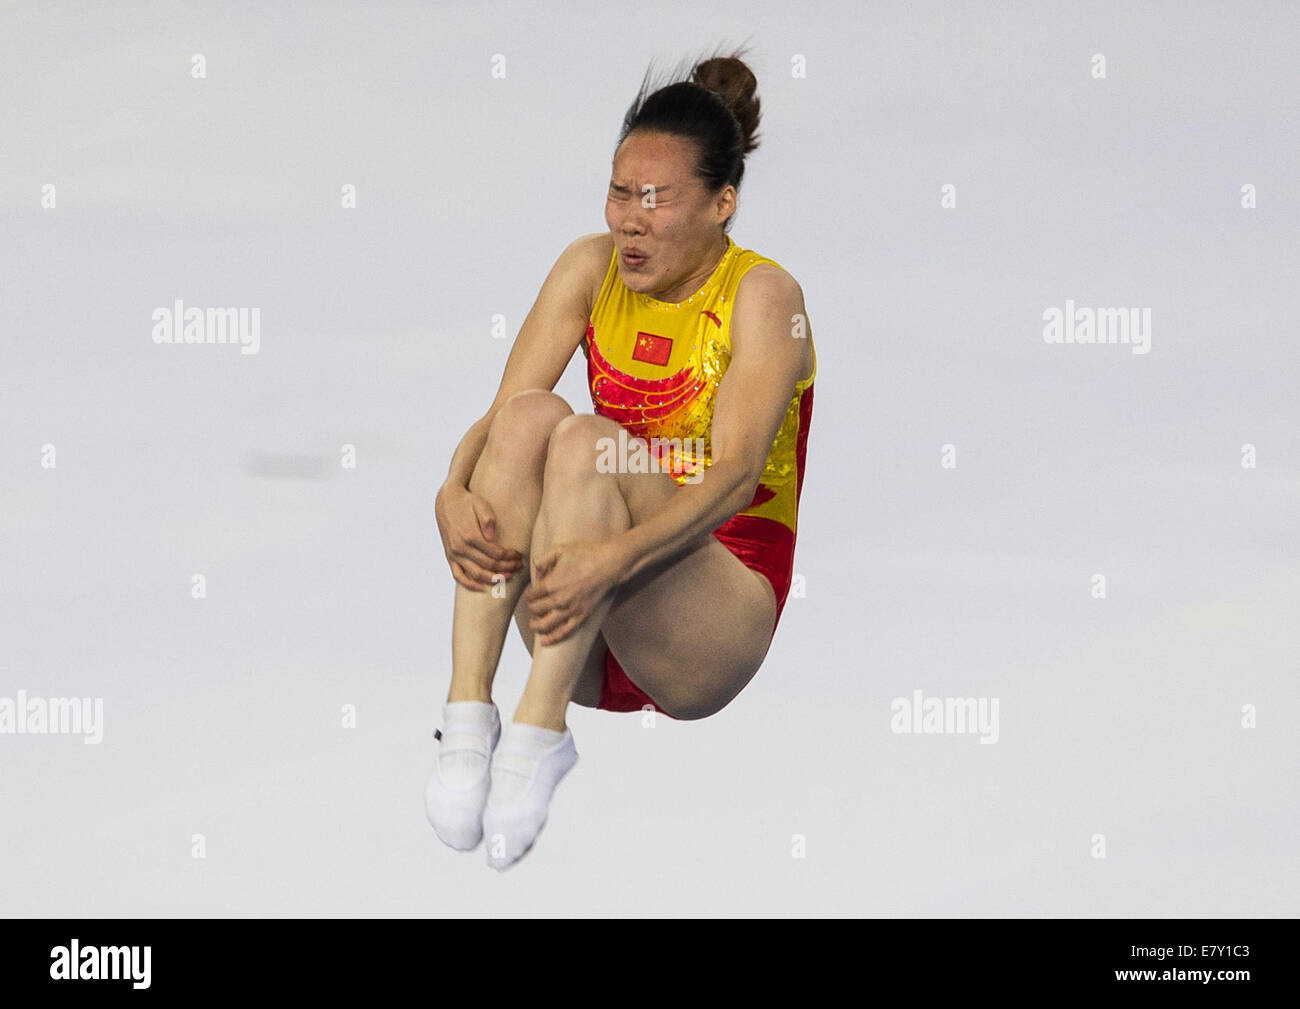 (140926) -- CORÉE DU SUD, le 26 septembre 2014 (Xinhua) -- Zhong Xingping de la concurrence de la Chine au cours de la finale féminine de la gymnastique trampoline à la 17e Jeux asiatiques à Incheon, Corée du Sud, le 26 septembre 2014. Zhong Xinping a obtenu la médaille d'argent avec 54,830 points. (Xinhua/Zheng Huansong)(mcg) Banque D'Images